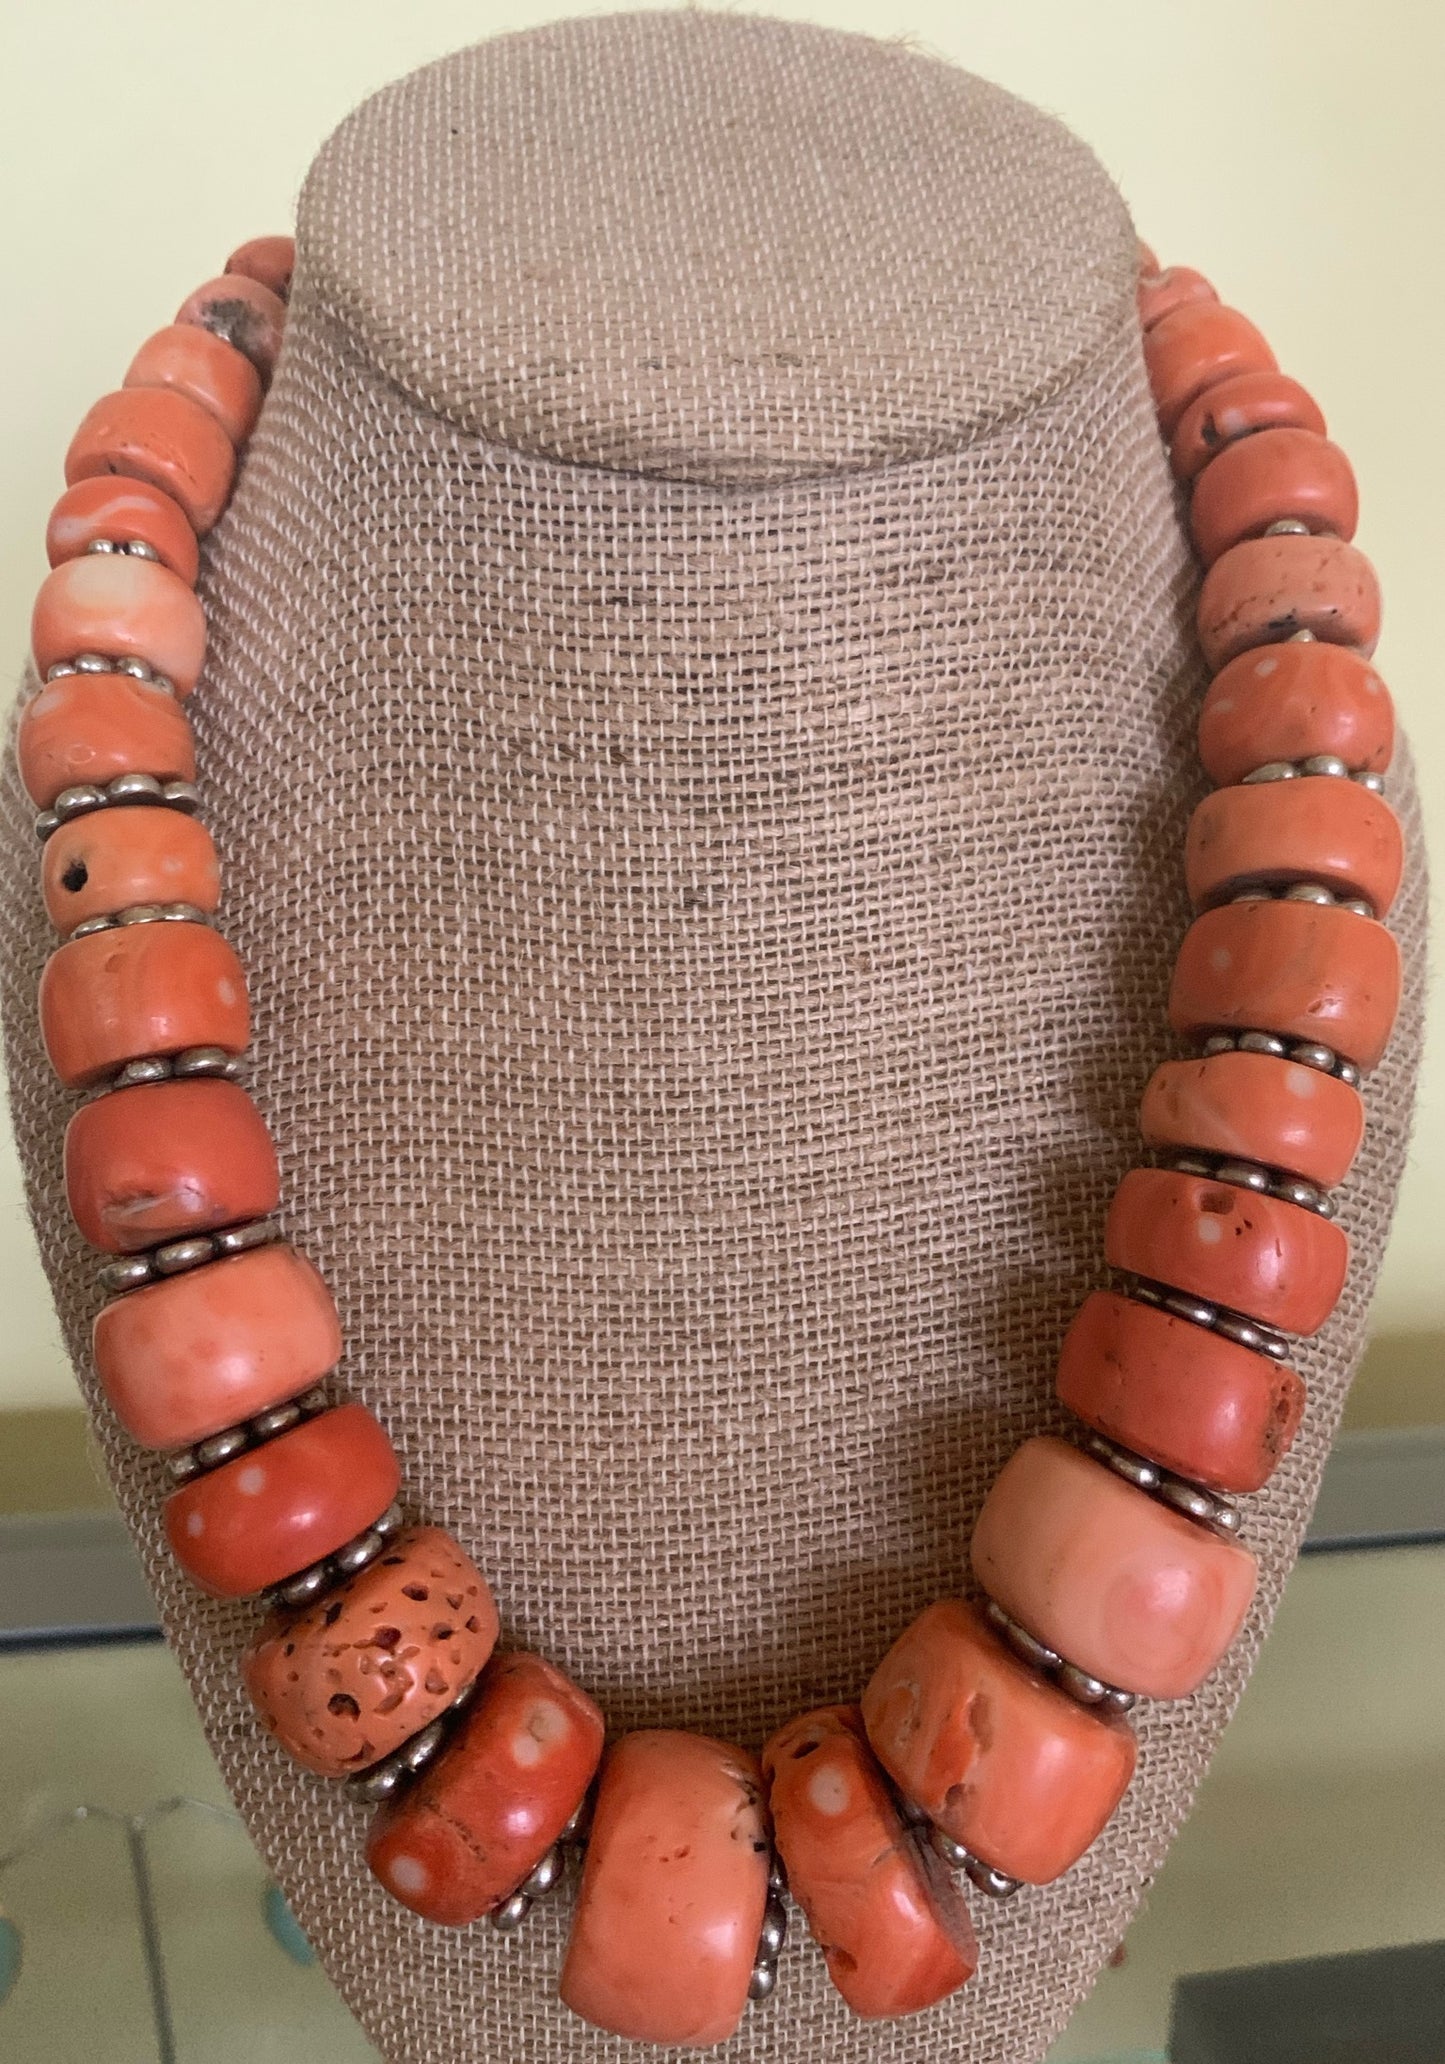 A vintage coral bead necklace